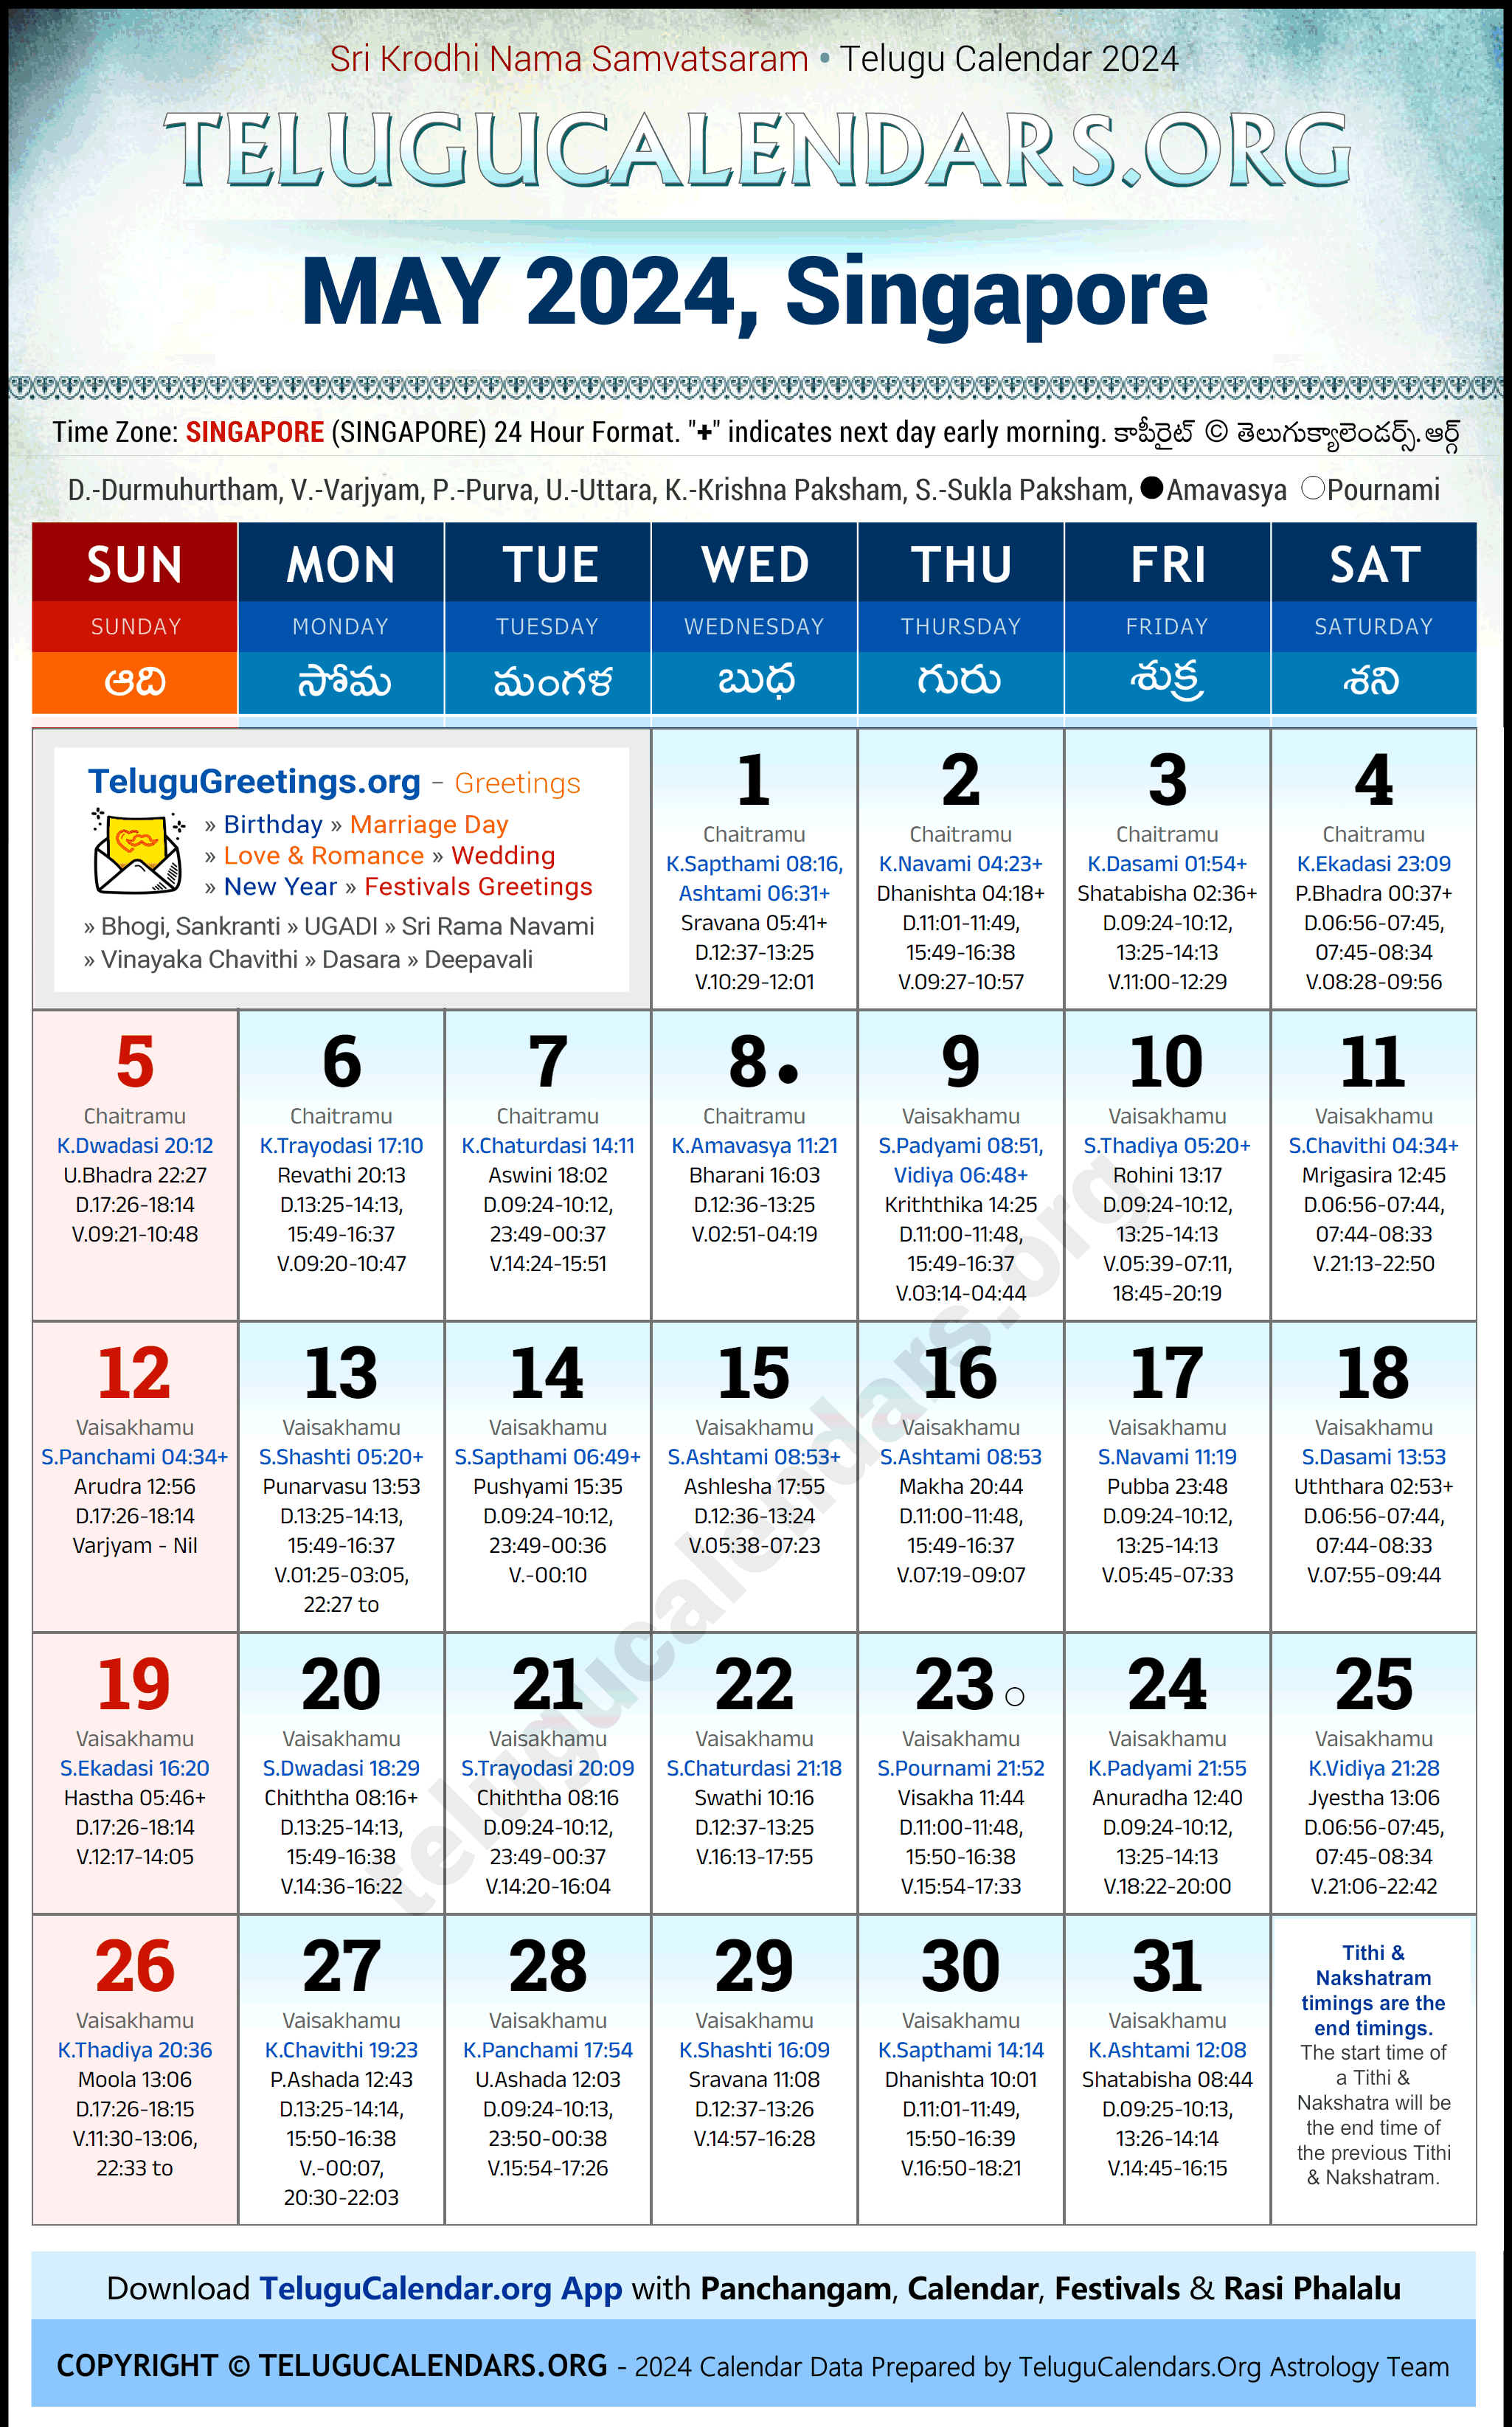 Telugu Calendar 2024 May Festivals for Singapore